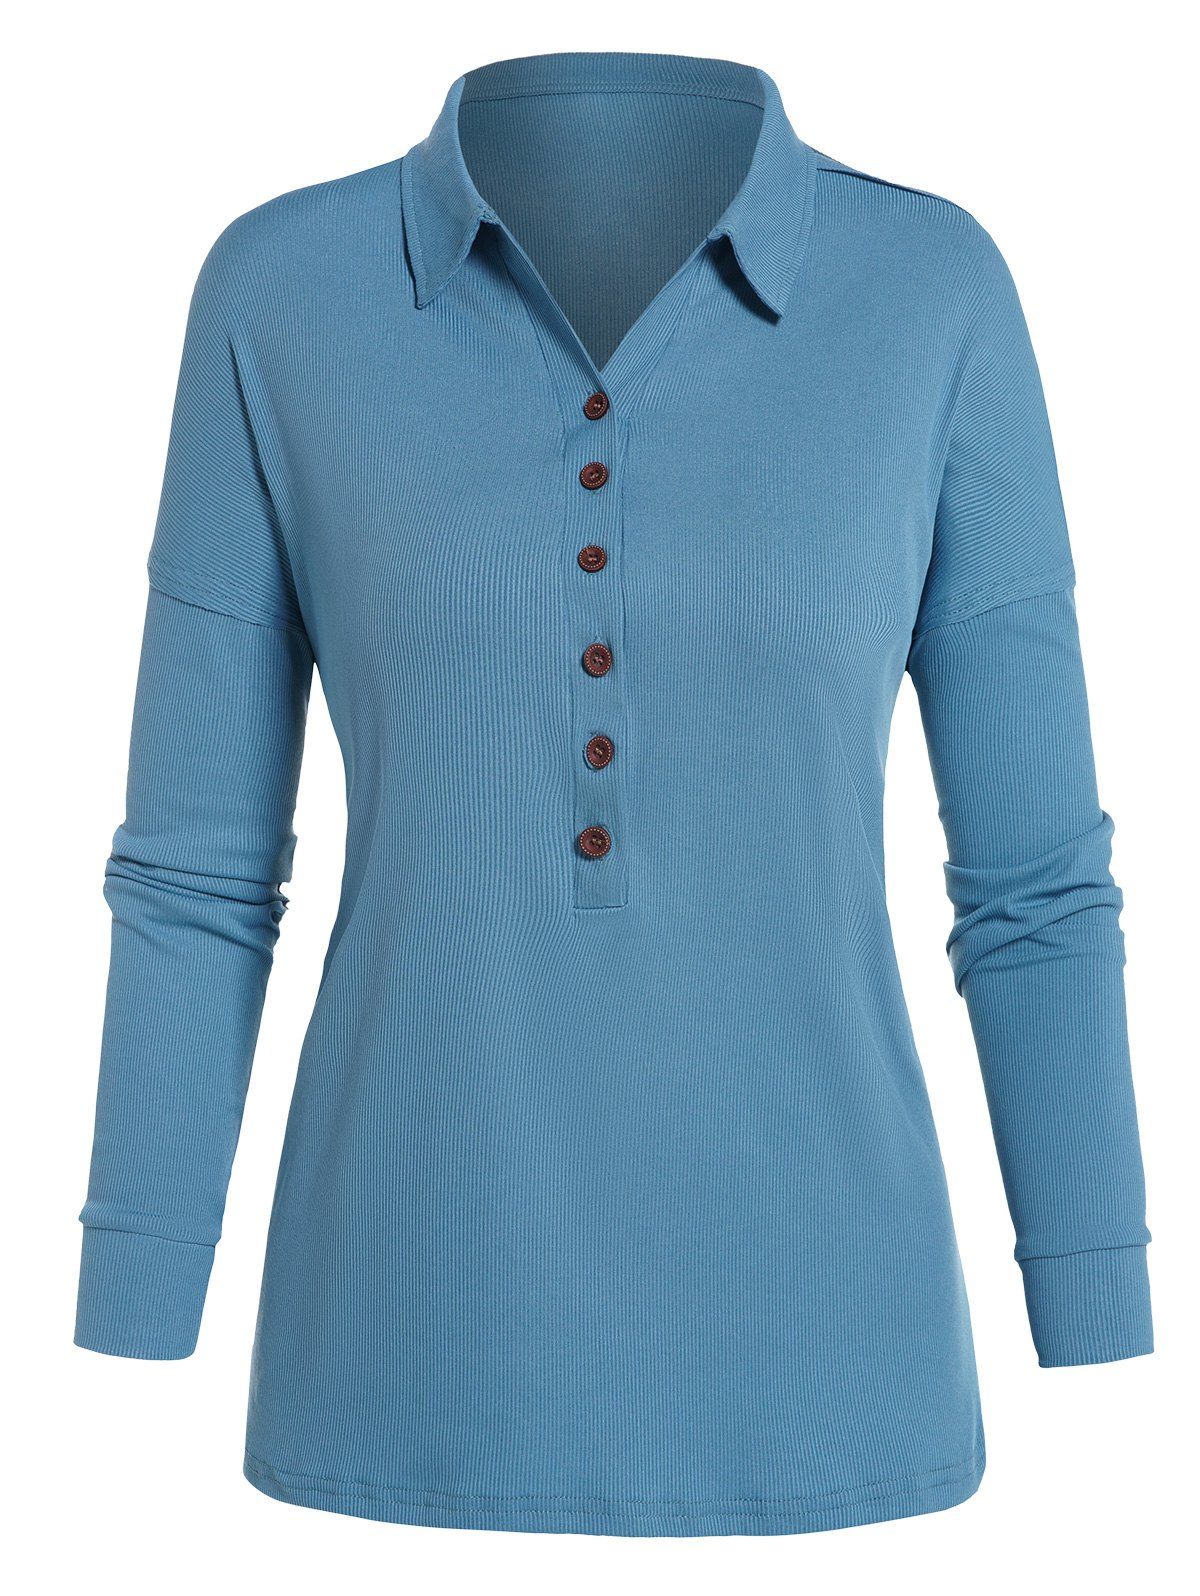 T-shirt Texturé Simple à Demi-Bouton Manches Longues à Col Relevé - Bleu clair L